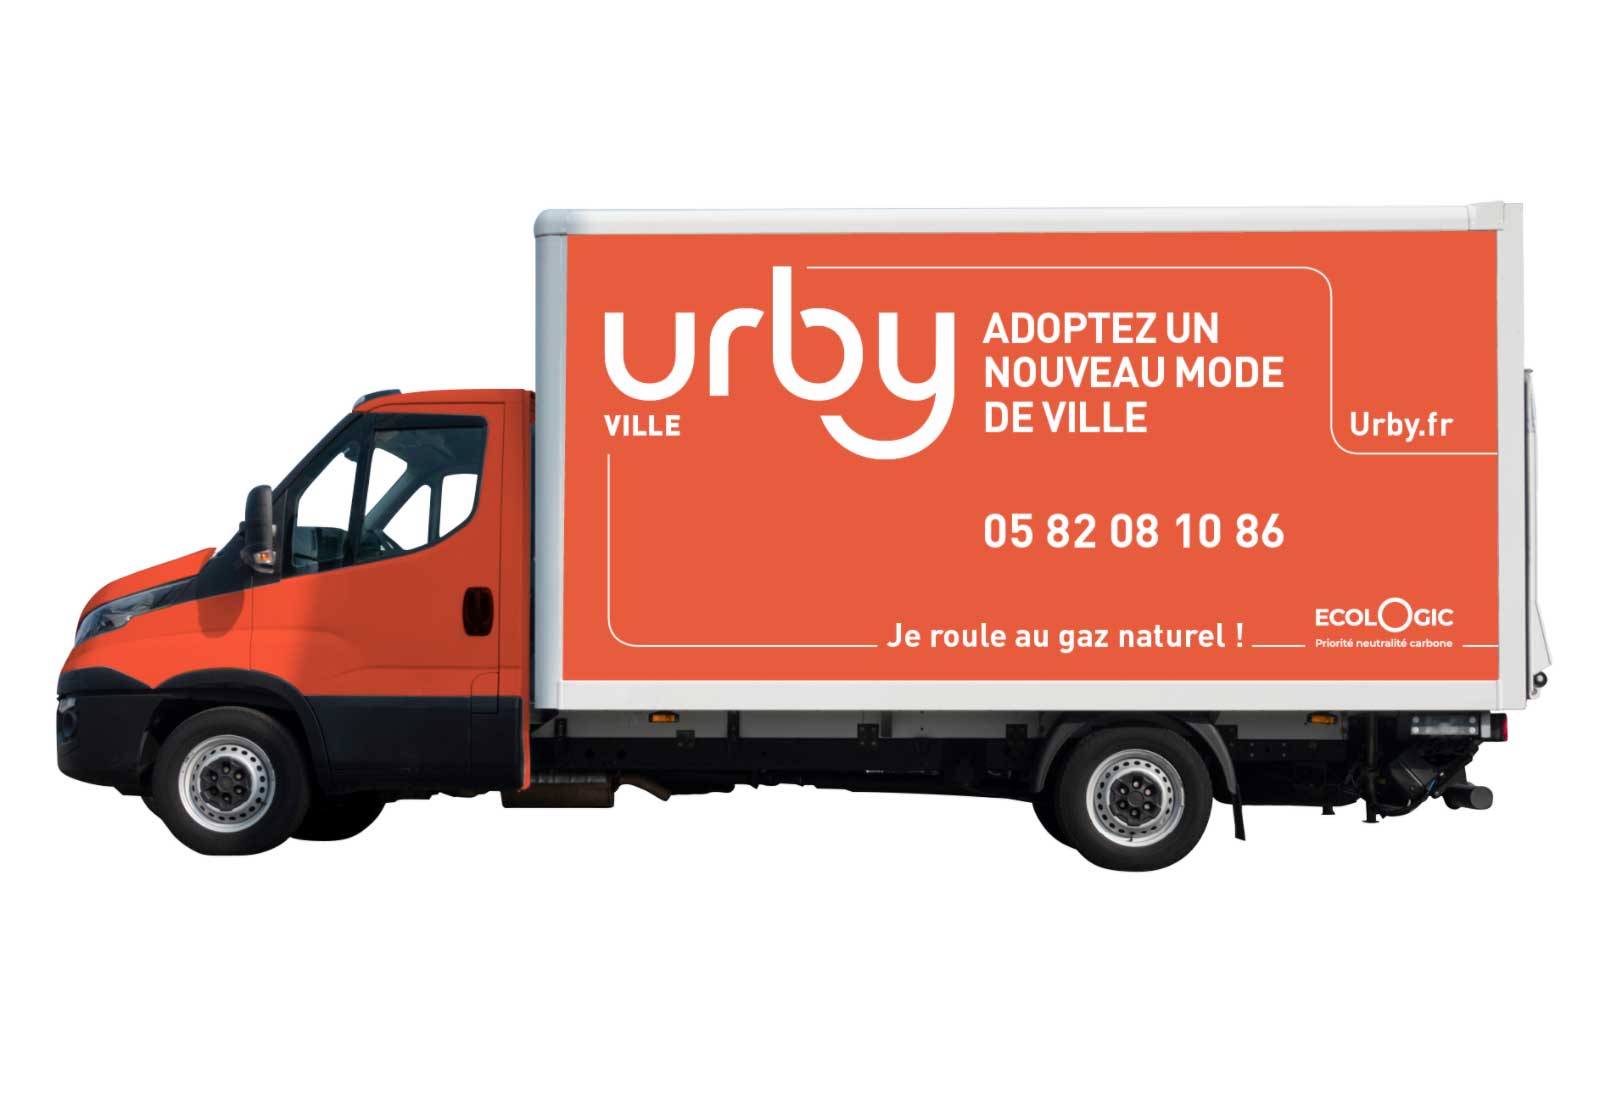 Urby choisit le GNV pour sa logistique urbaine